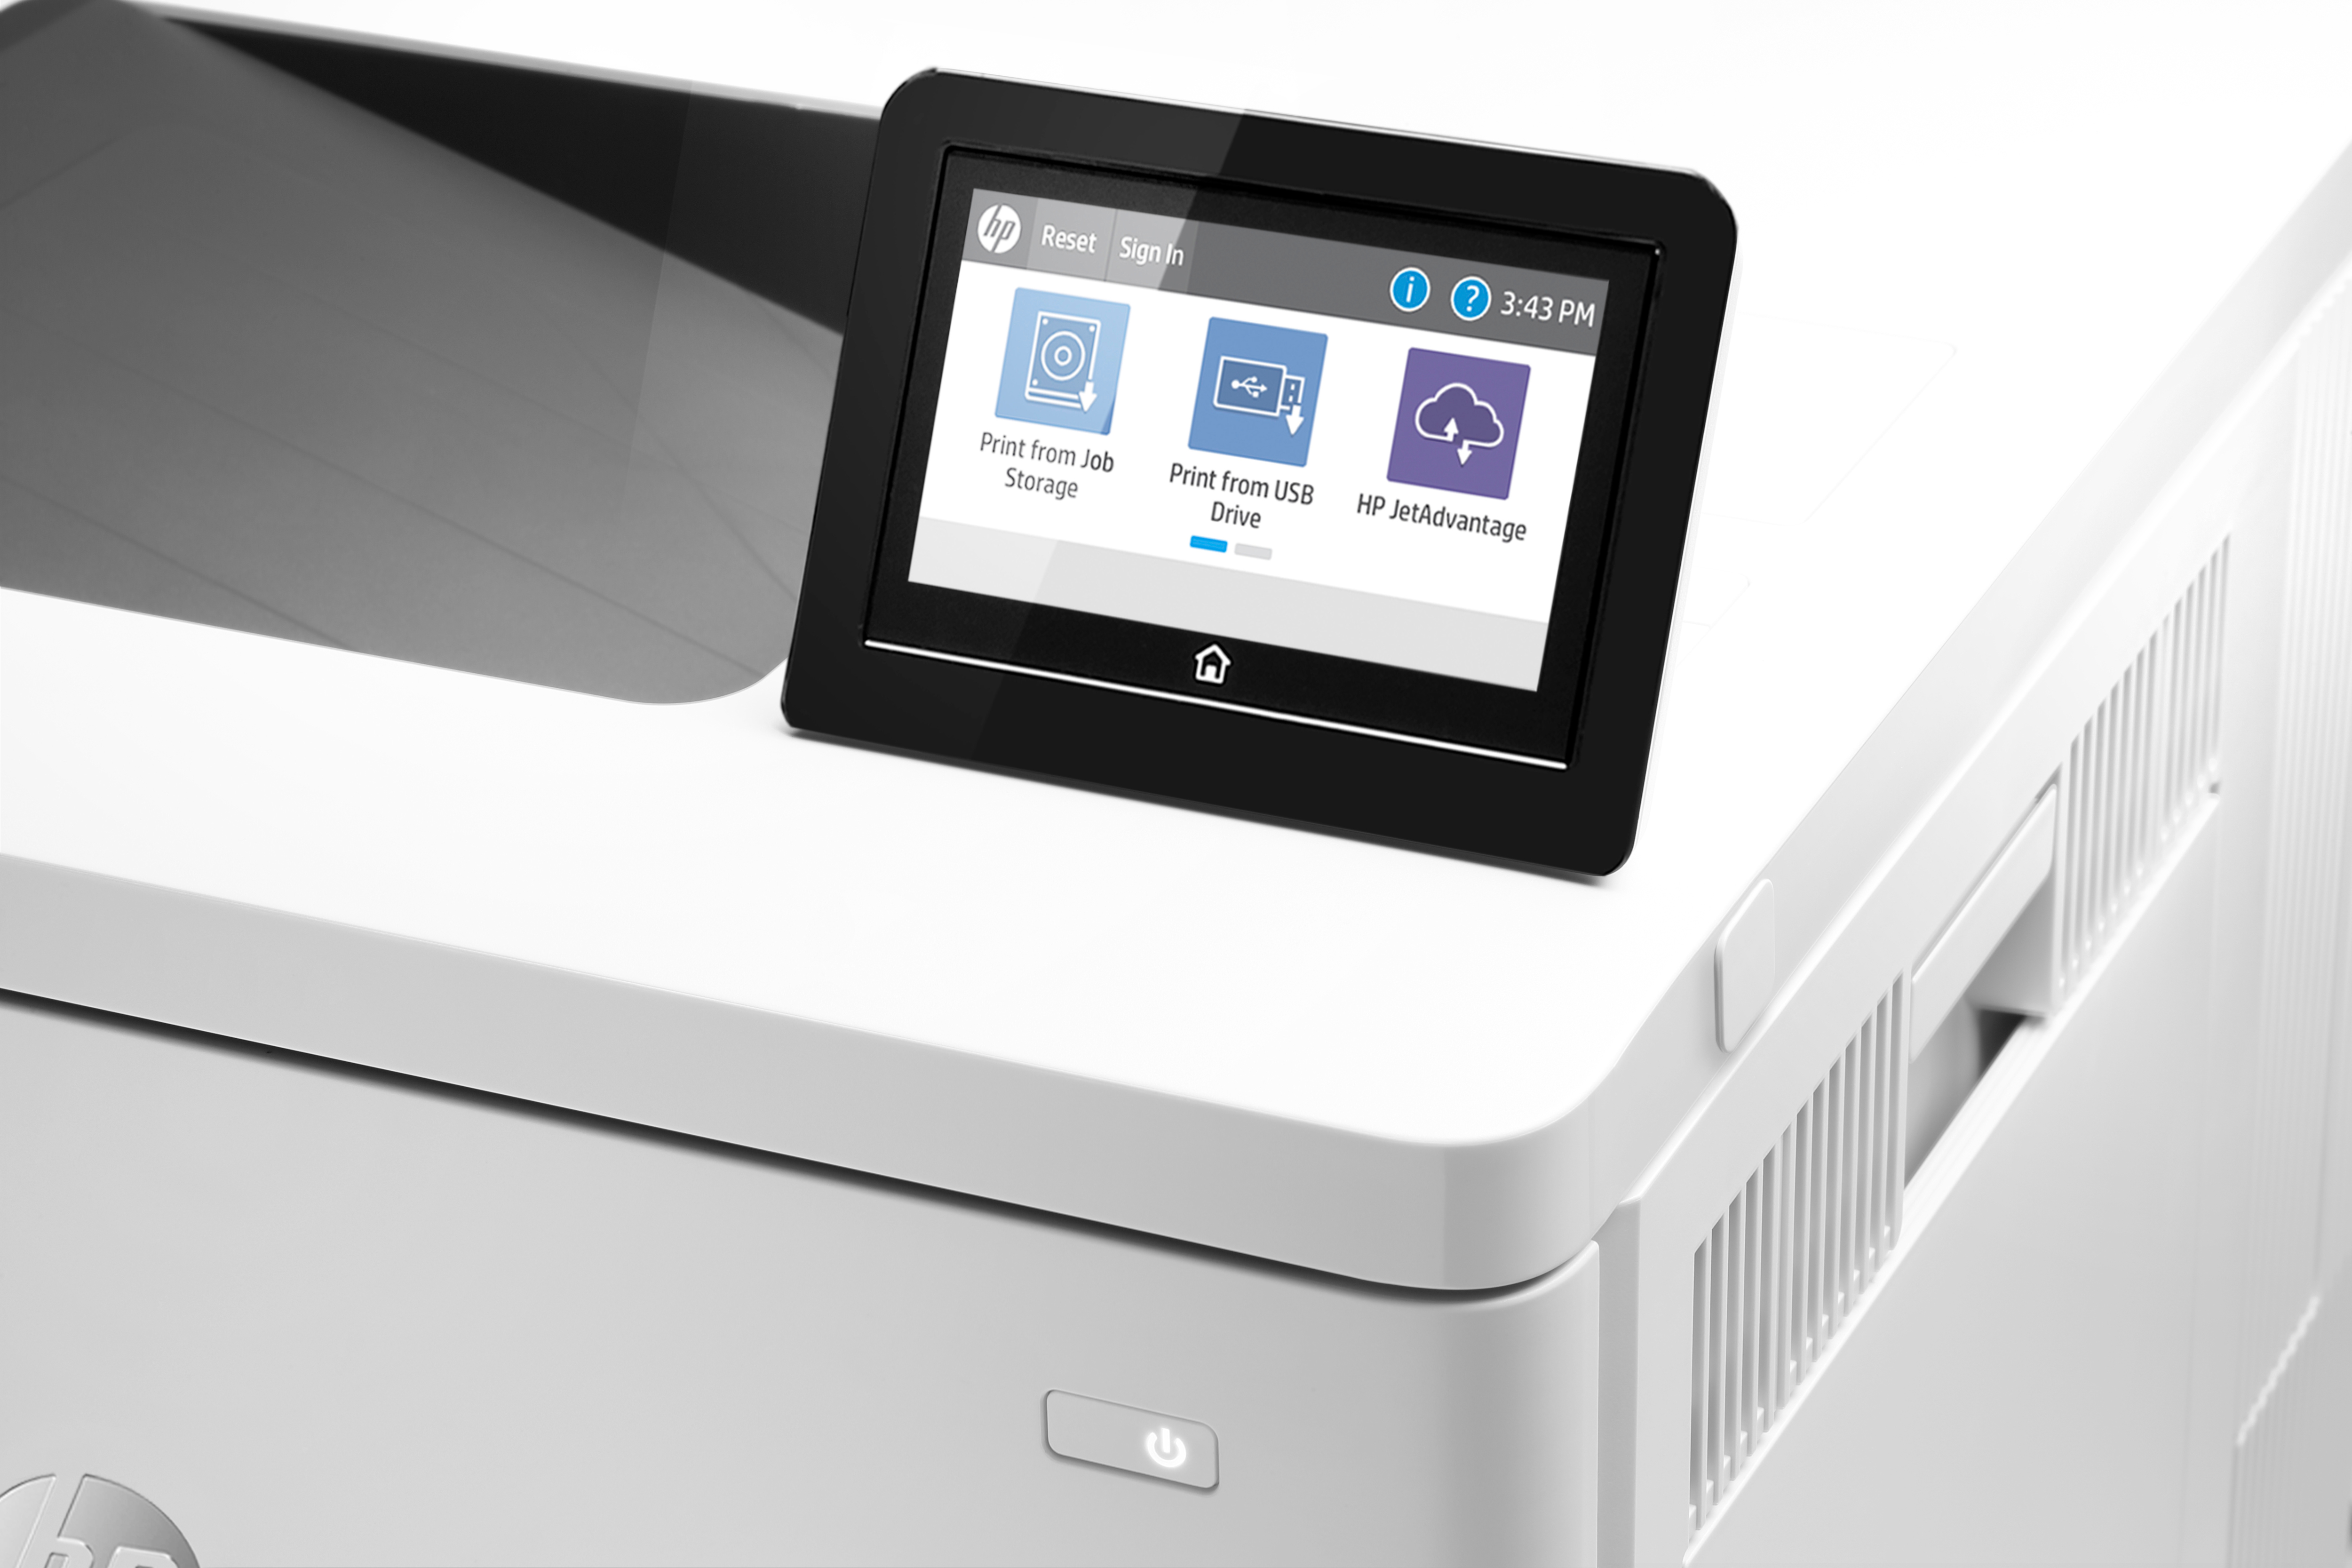 HP Color LaserJet Enterprise M555dn - Drucker - Farbe - Duplex - Laser - A4/Legal - 1200 x 1200 dpi - bis zu 38 Seiten/Min. bis zu 38 Seiten/Min. (Farbe)